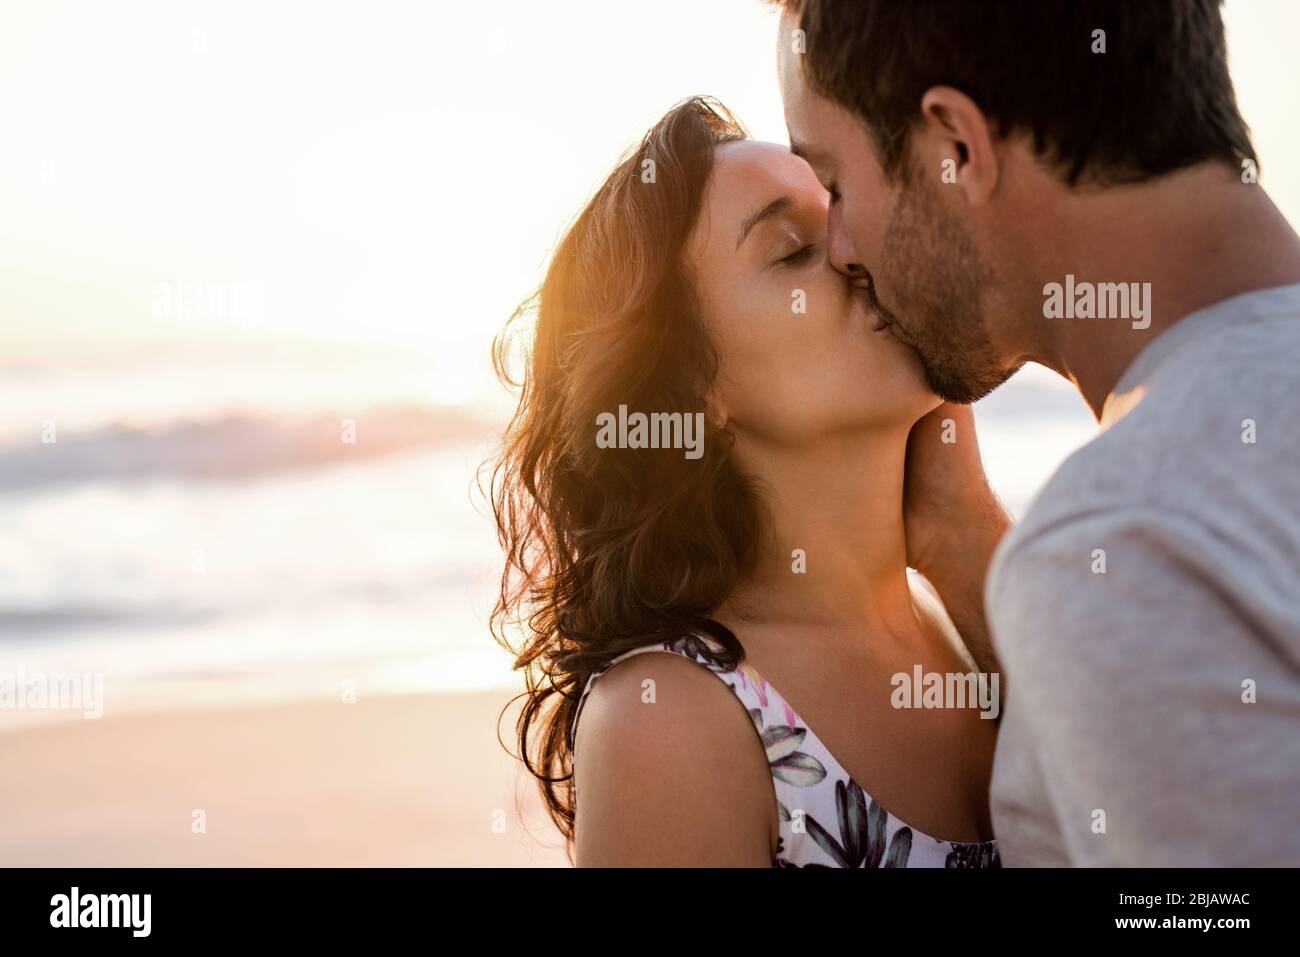 Un jeune couple affectueux qui s'embrasse sur une plage au crépuscule Banque D'Images